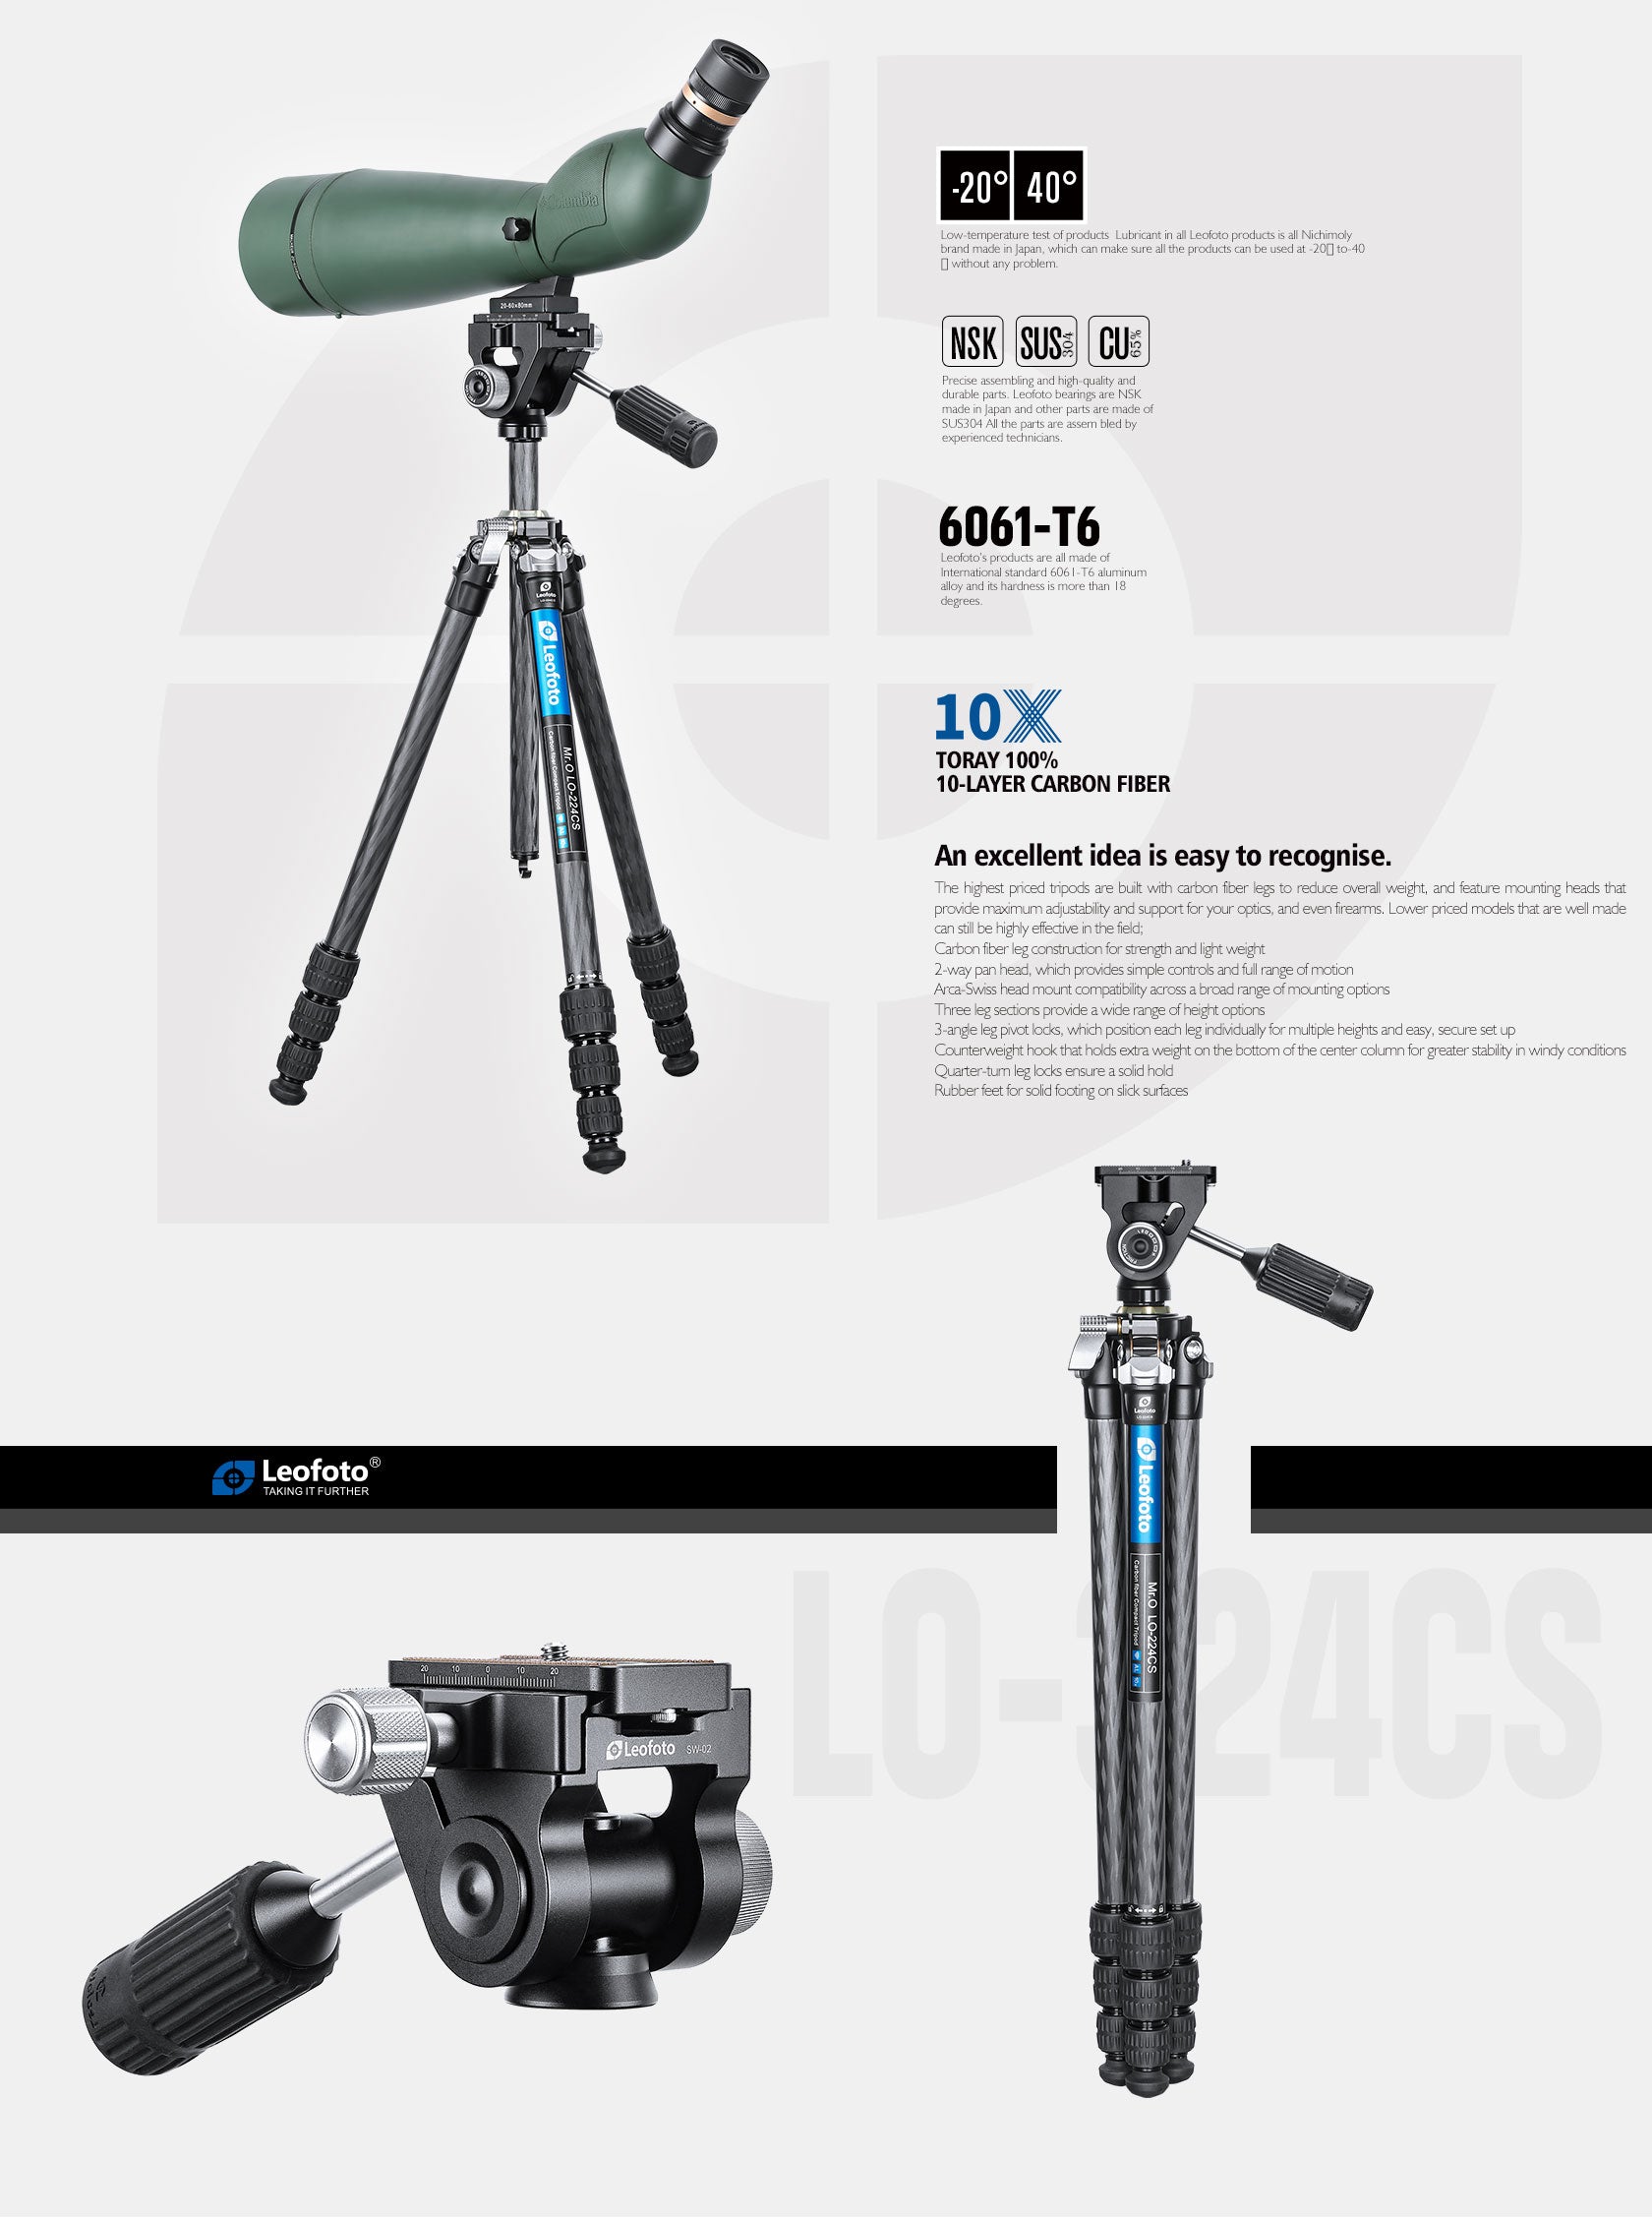 Leofoto LO-223CS/LO-224CS + SW-02 Carbon Fiber Tripod + 2-Way Pan Head Kit for Binoculars | 22 lb Max Load